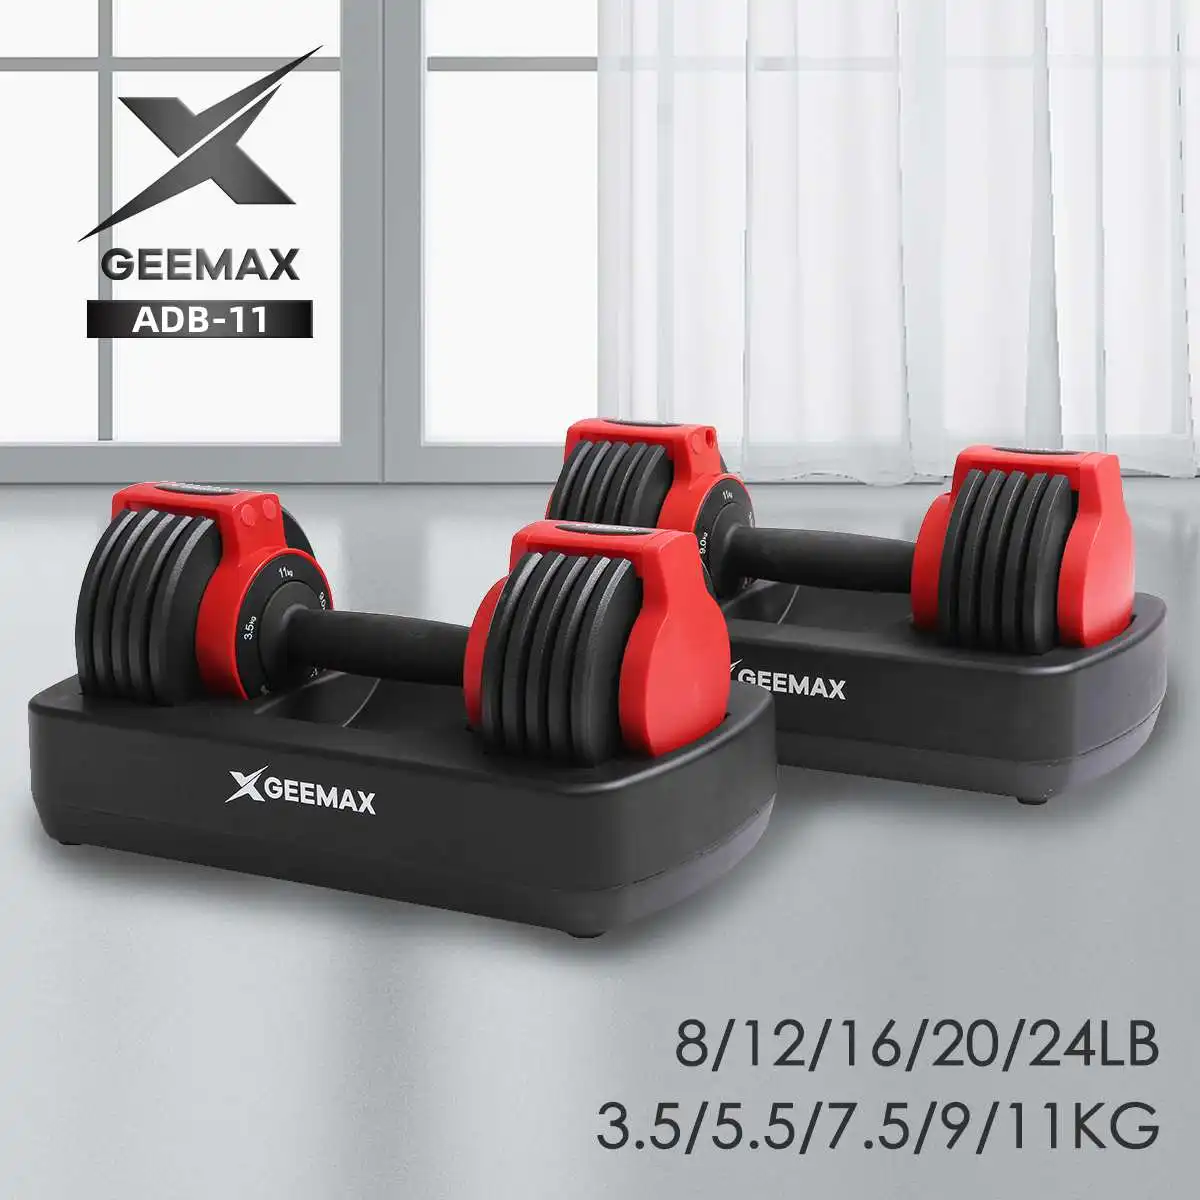 

Регулируемые гантели GEEMAX, тренировочные гантели для фитнеса и тренировок, вес 5 в 1, вес 11 кг